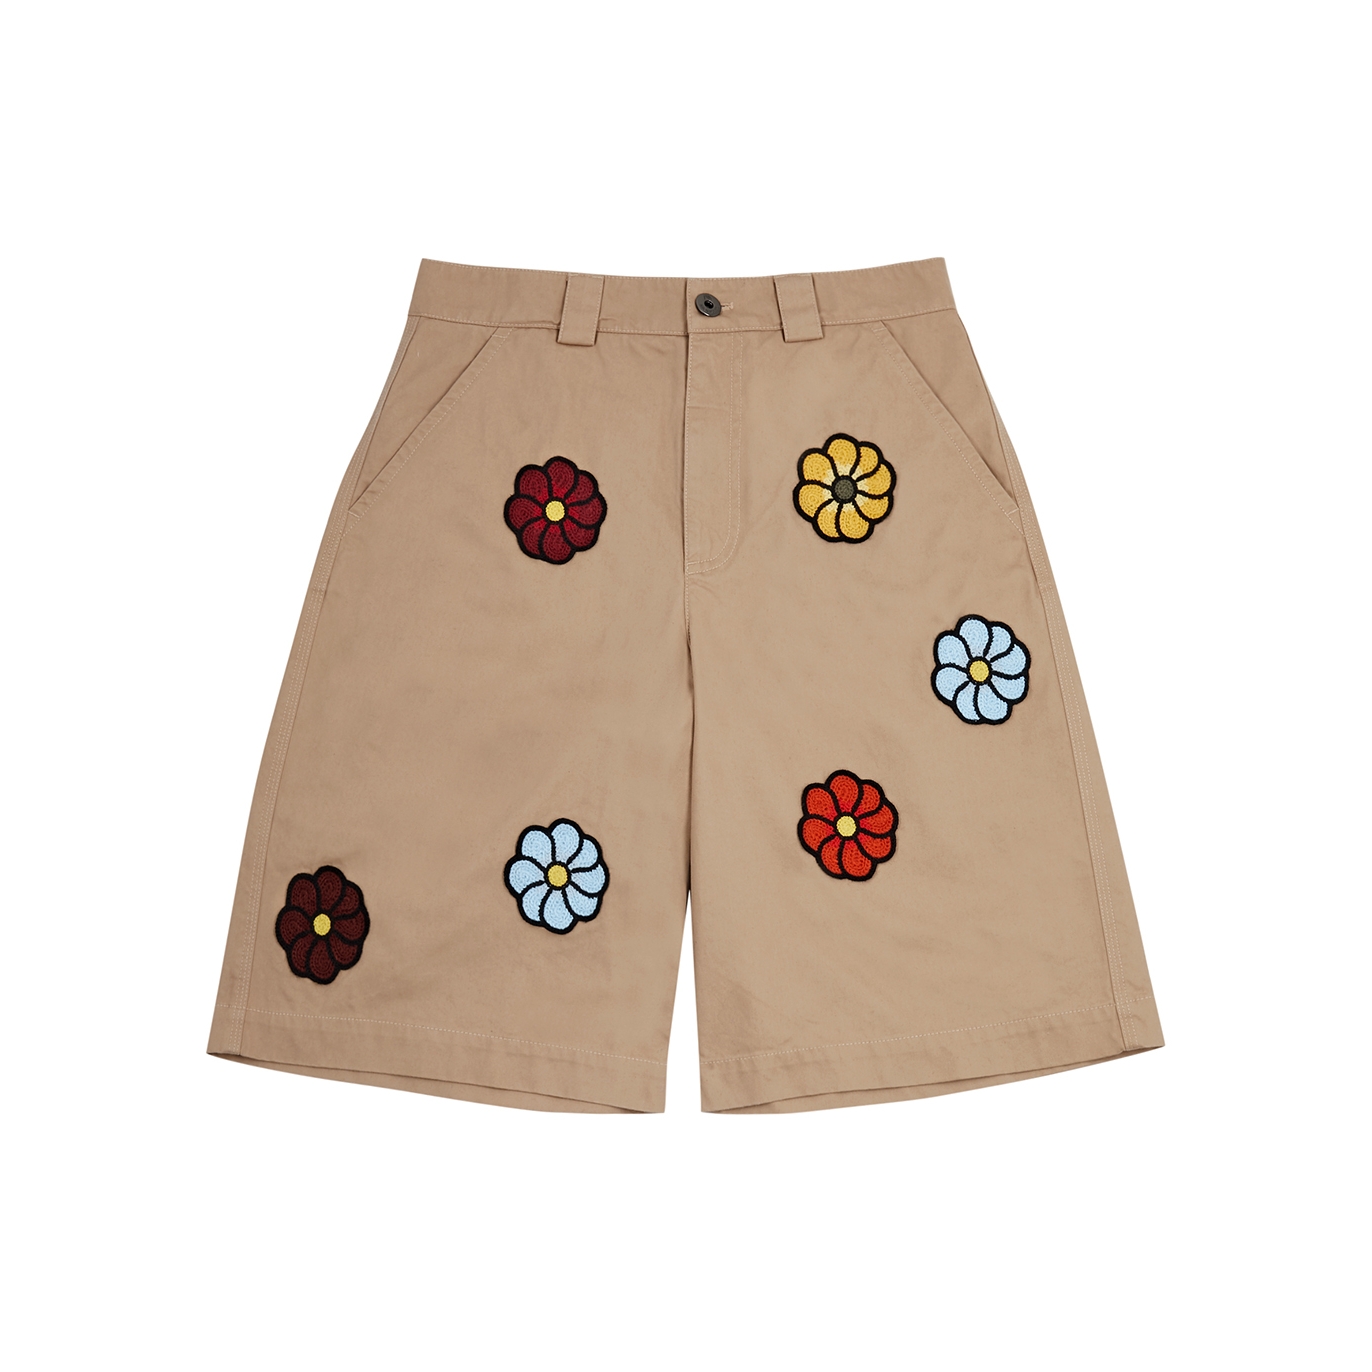 Moncler Genius 1 Moncler JW Anderson Floral Cotton Shorts - Ecru - W28